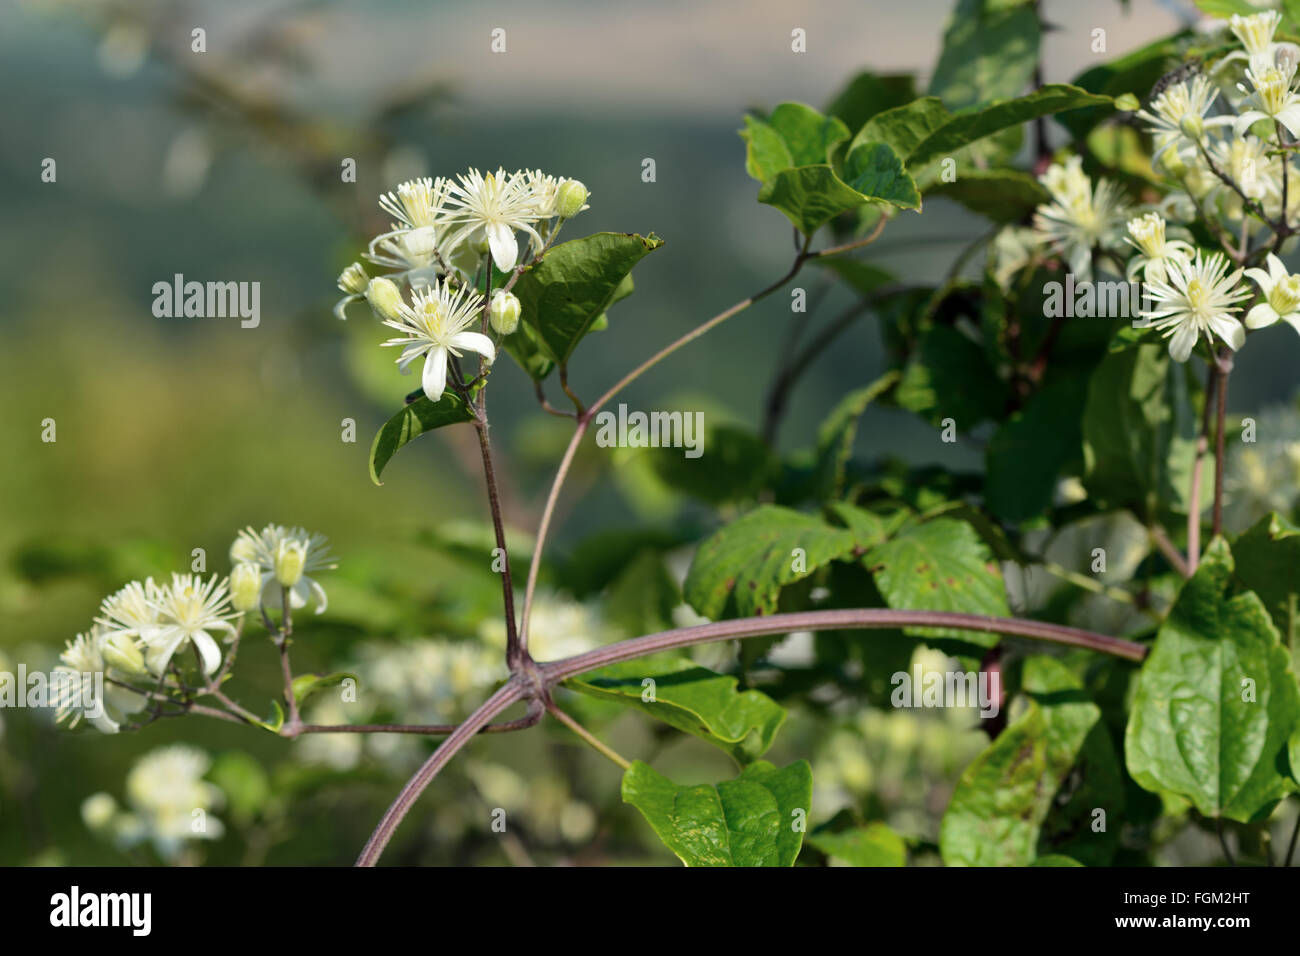 Des Reisenden-Joy (Clematis Vitalba). Klettern Strauch in der Familie Butterblume (Butterblume), mit attraktiven weißen Blüten Stockfoto